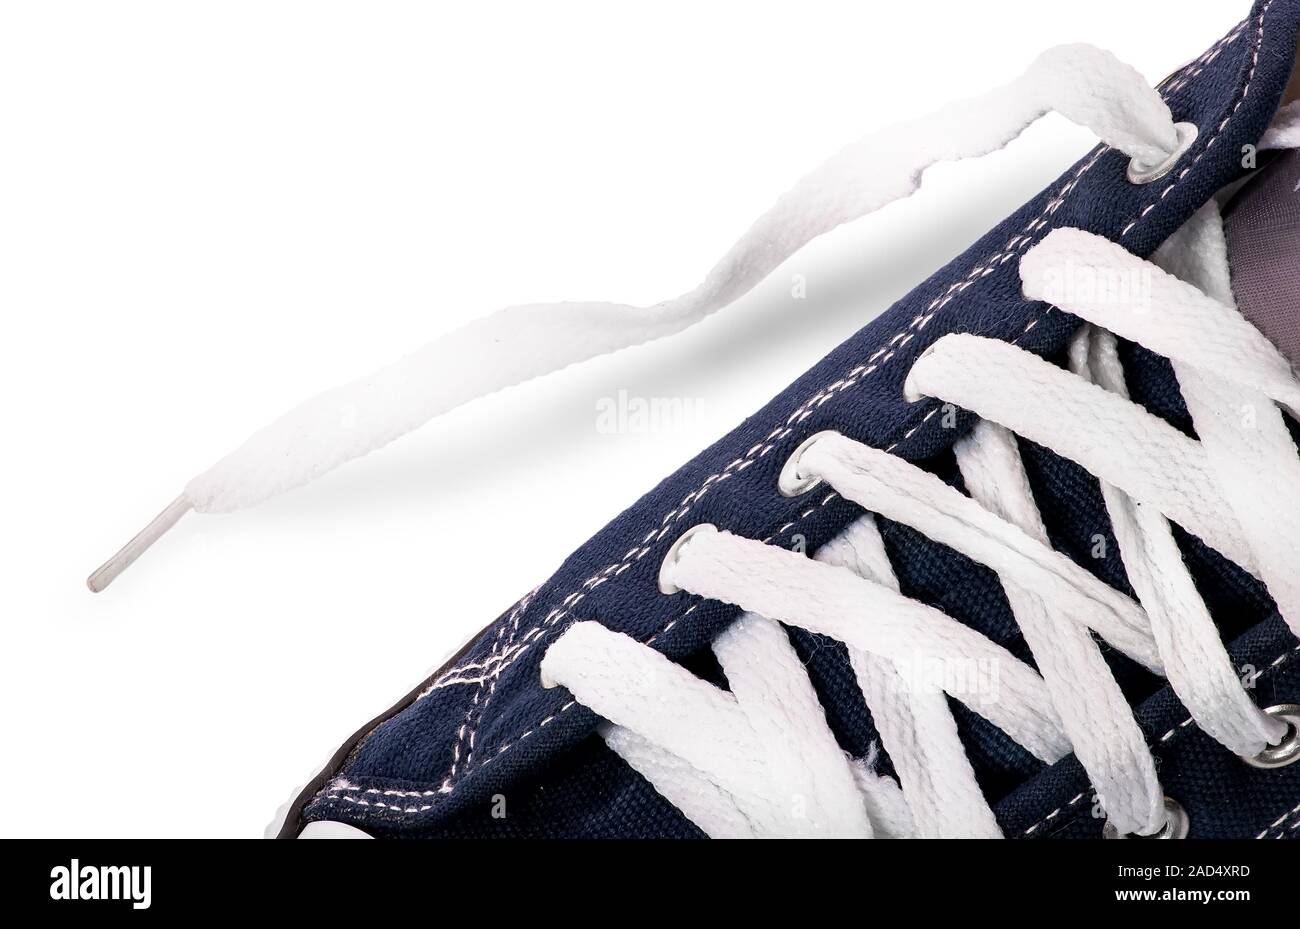 SCUOLA Per Bambini Scarpe Sportive Scarpe da ginnastica bianco in esecuzione pantaloni sportivi Ragazzi Ragazze Scarpe Da Ginnastica 